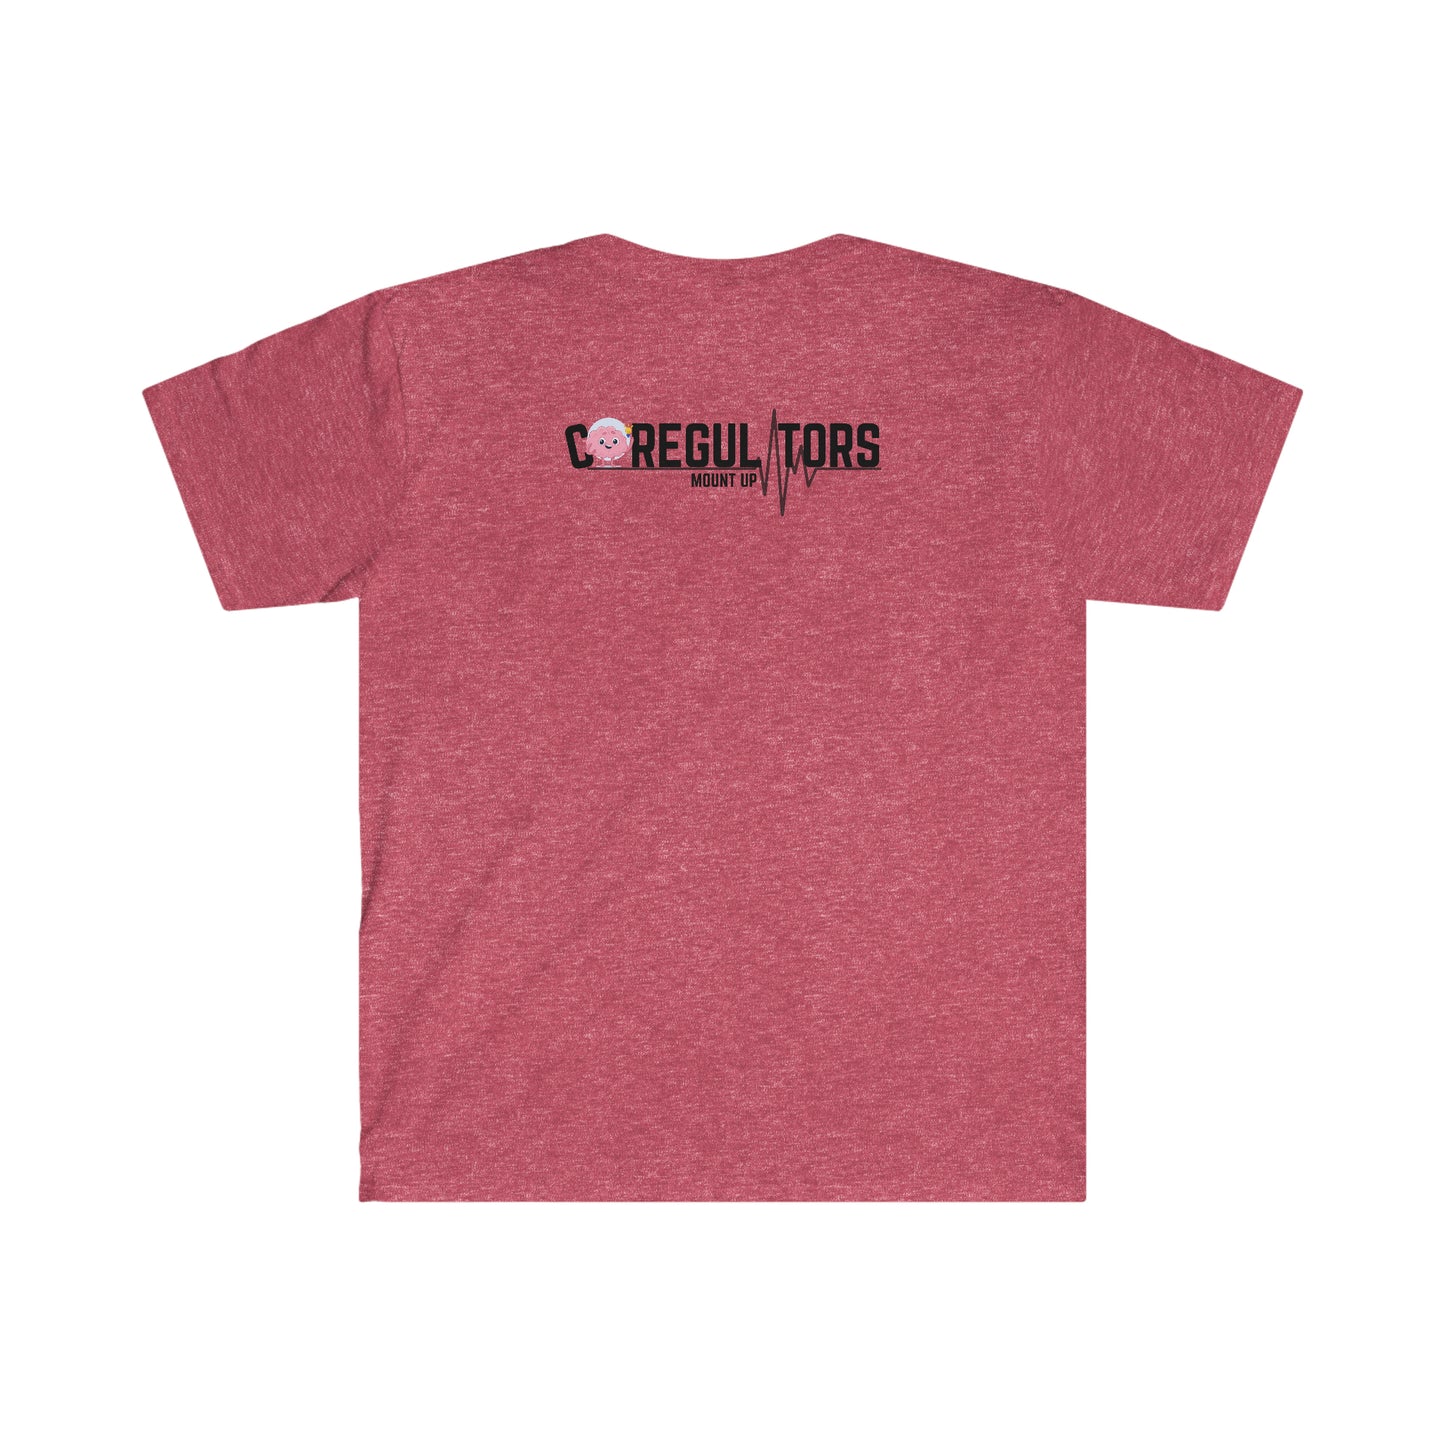 Official Co-Regulators Merch Unisex Softstyle T-Shirt